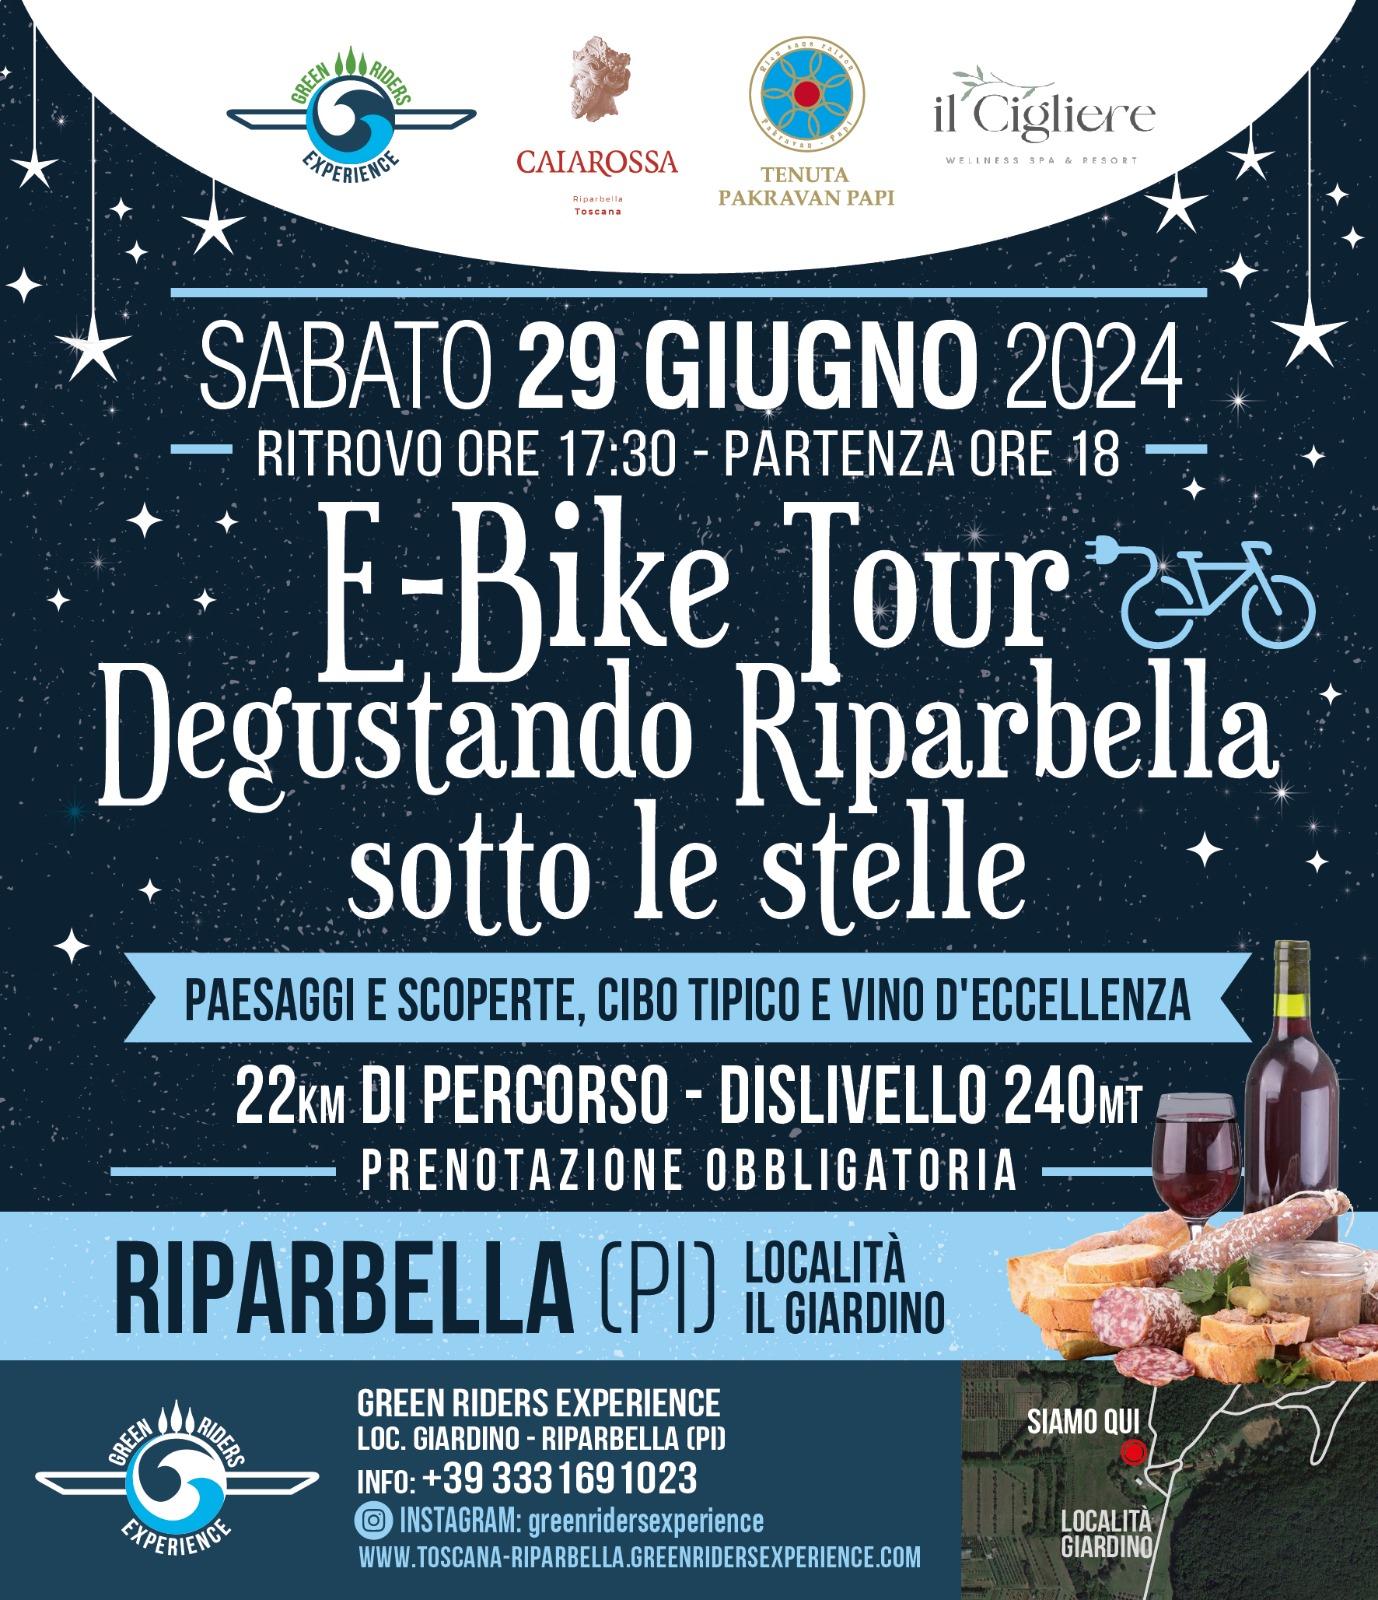 E-bike Tour Degustando Riparbella "Sotto Le stelle" Sabato 29 Giugno partenza alle ore 18:00